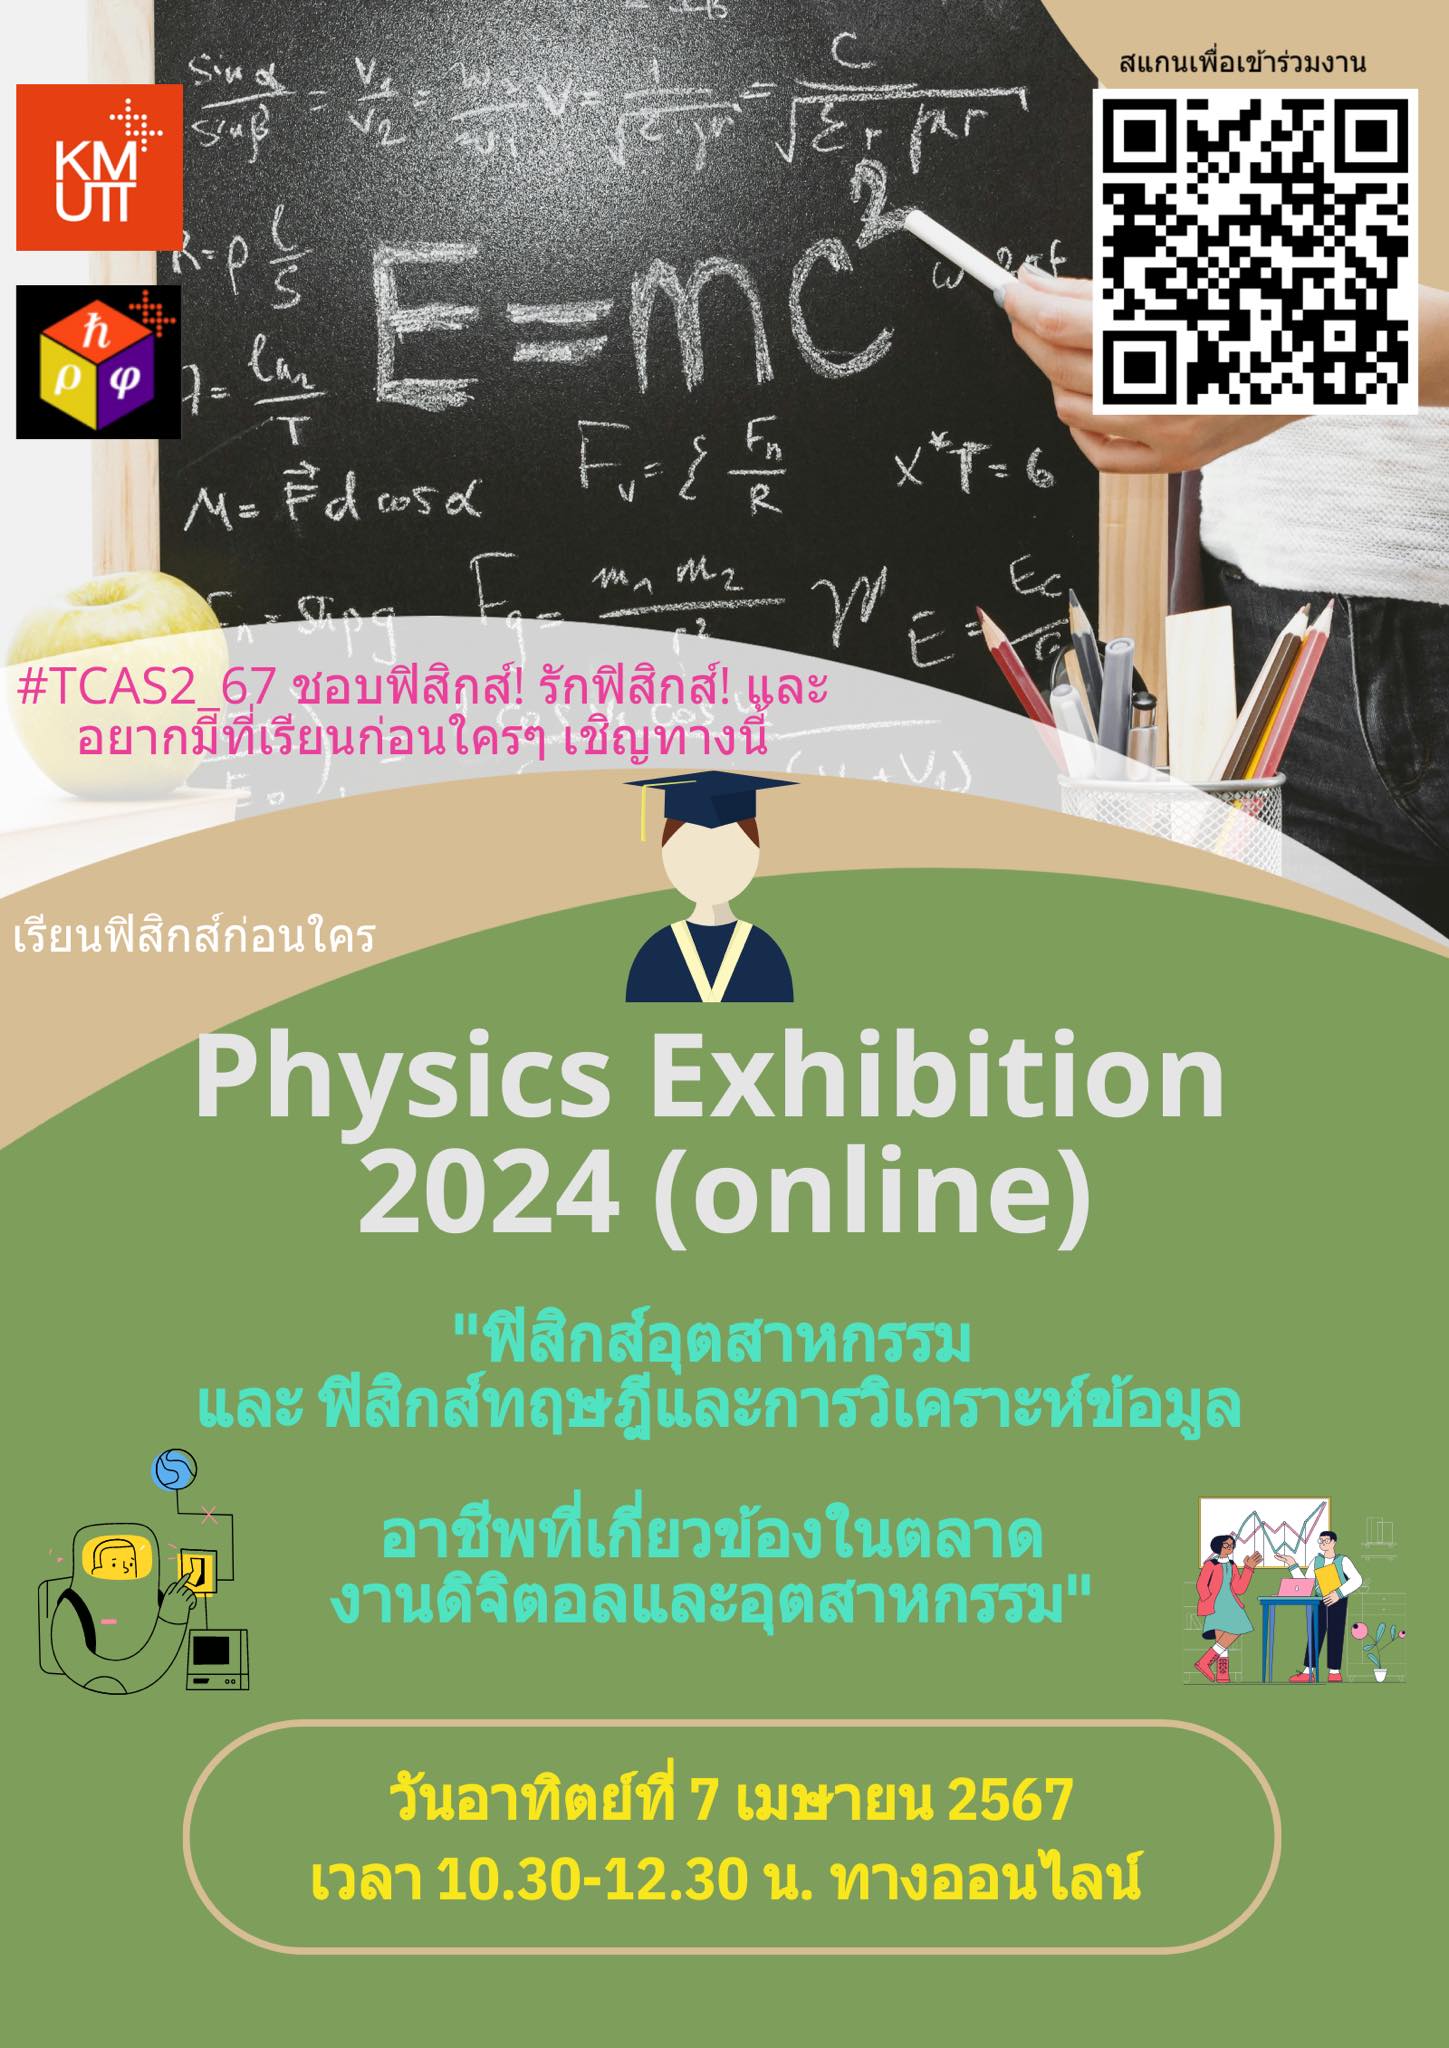 โครงการ Physics Exhibition 2024 (ออนไลน์) ในวันอาทิตย์ ที่ 7 เมษายน 2567 เวลา10.30-12.30 น.